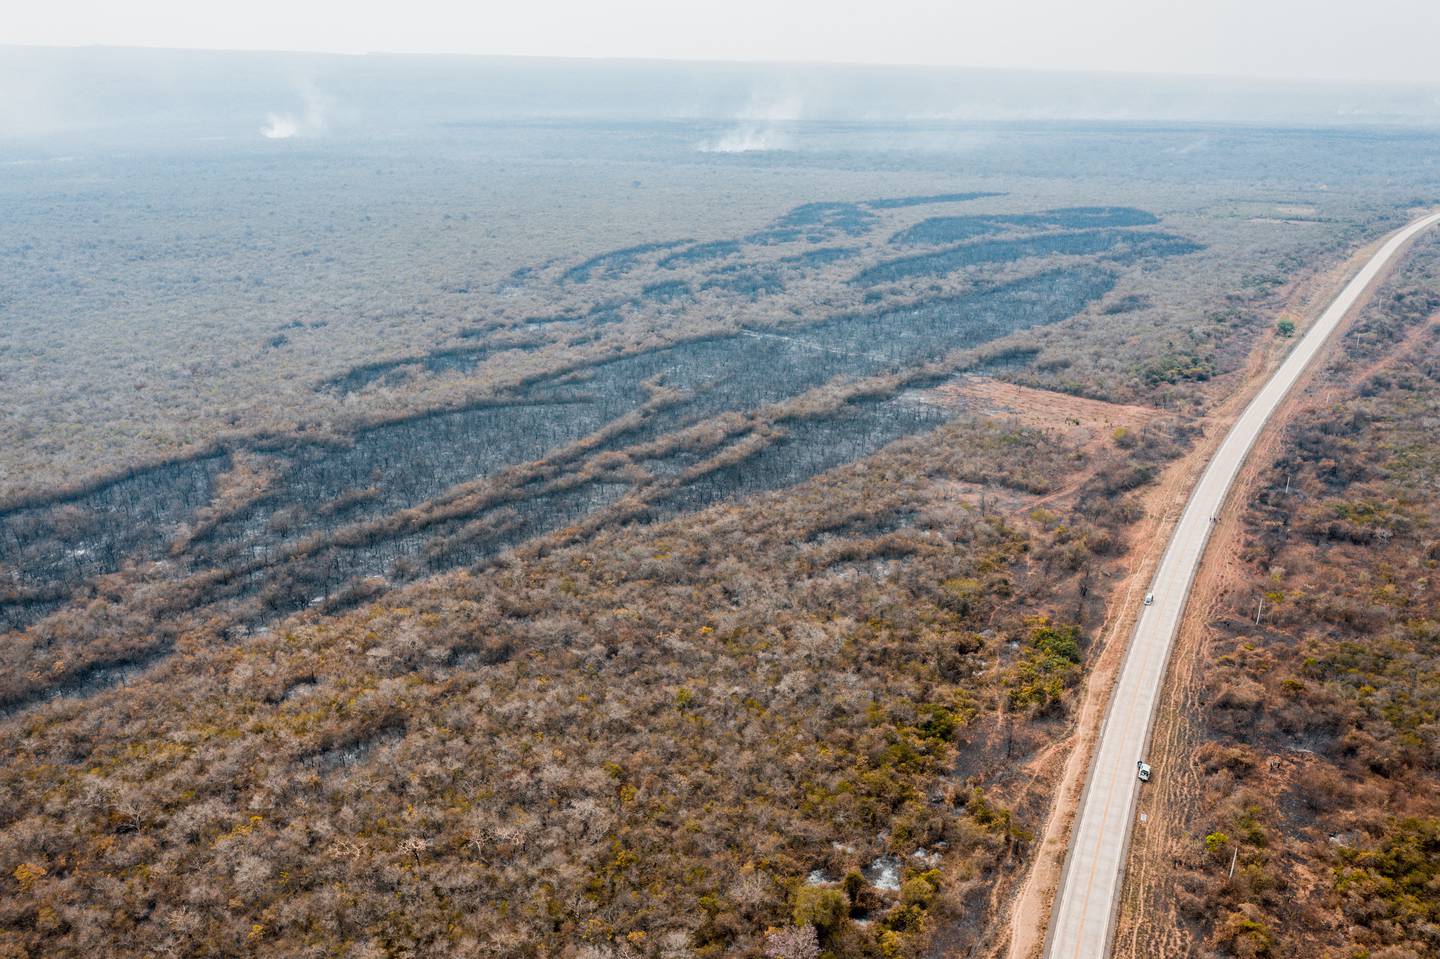 Los incendios forestales en Santa Cruz y Beni dejan muchas regiones de bosques destruidas y listas para el uso agrario a pesar de que su vocación primaria no era esa.